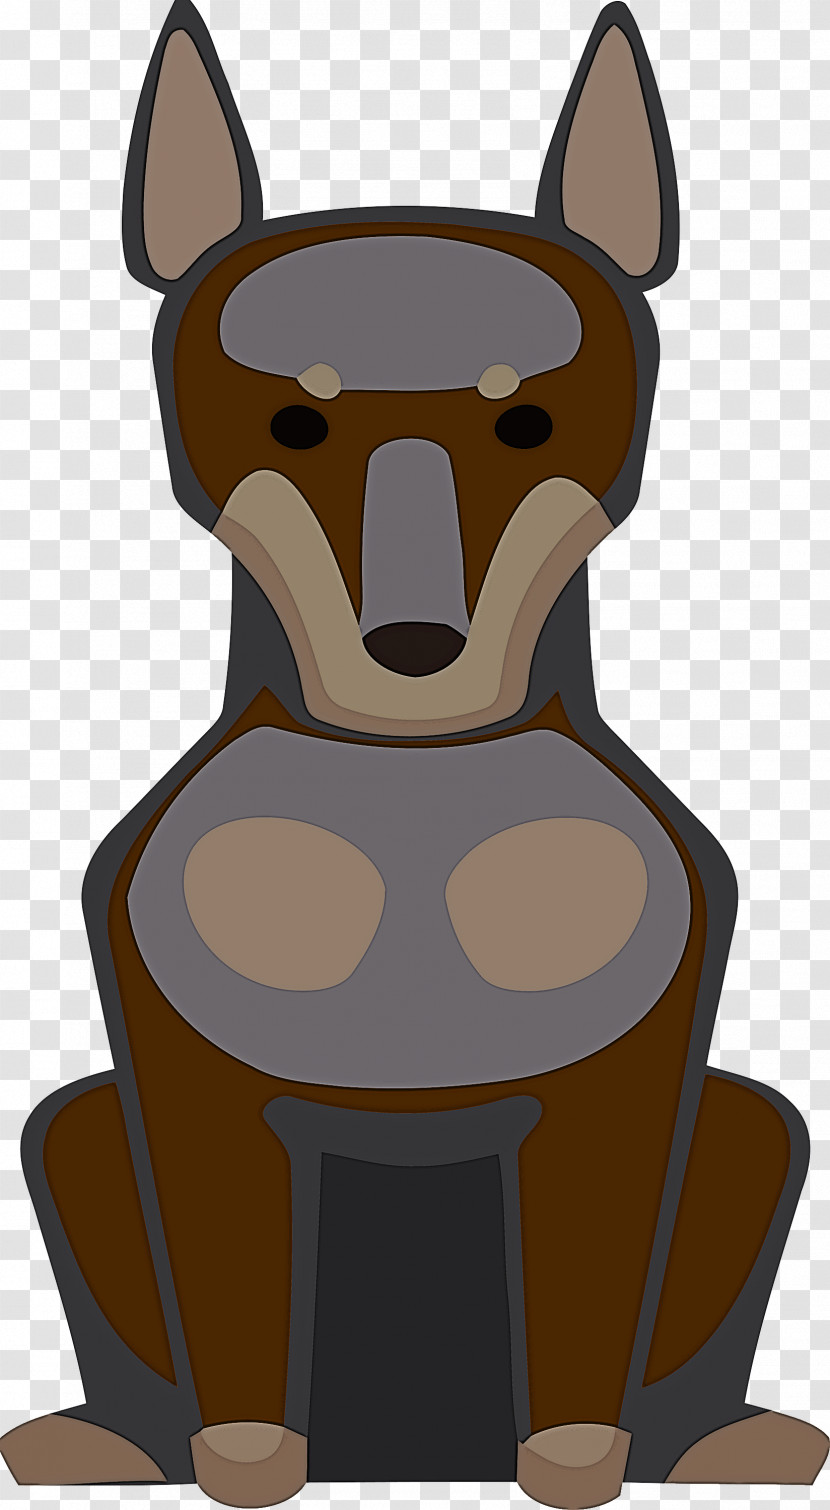 Dog Snout Cartoon Bears Character Transparent PNG